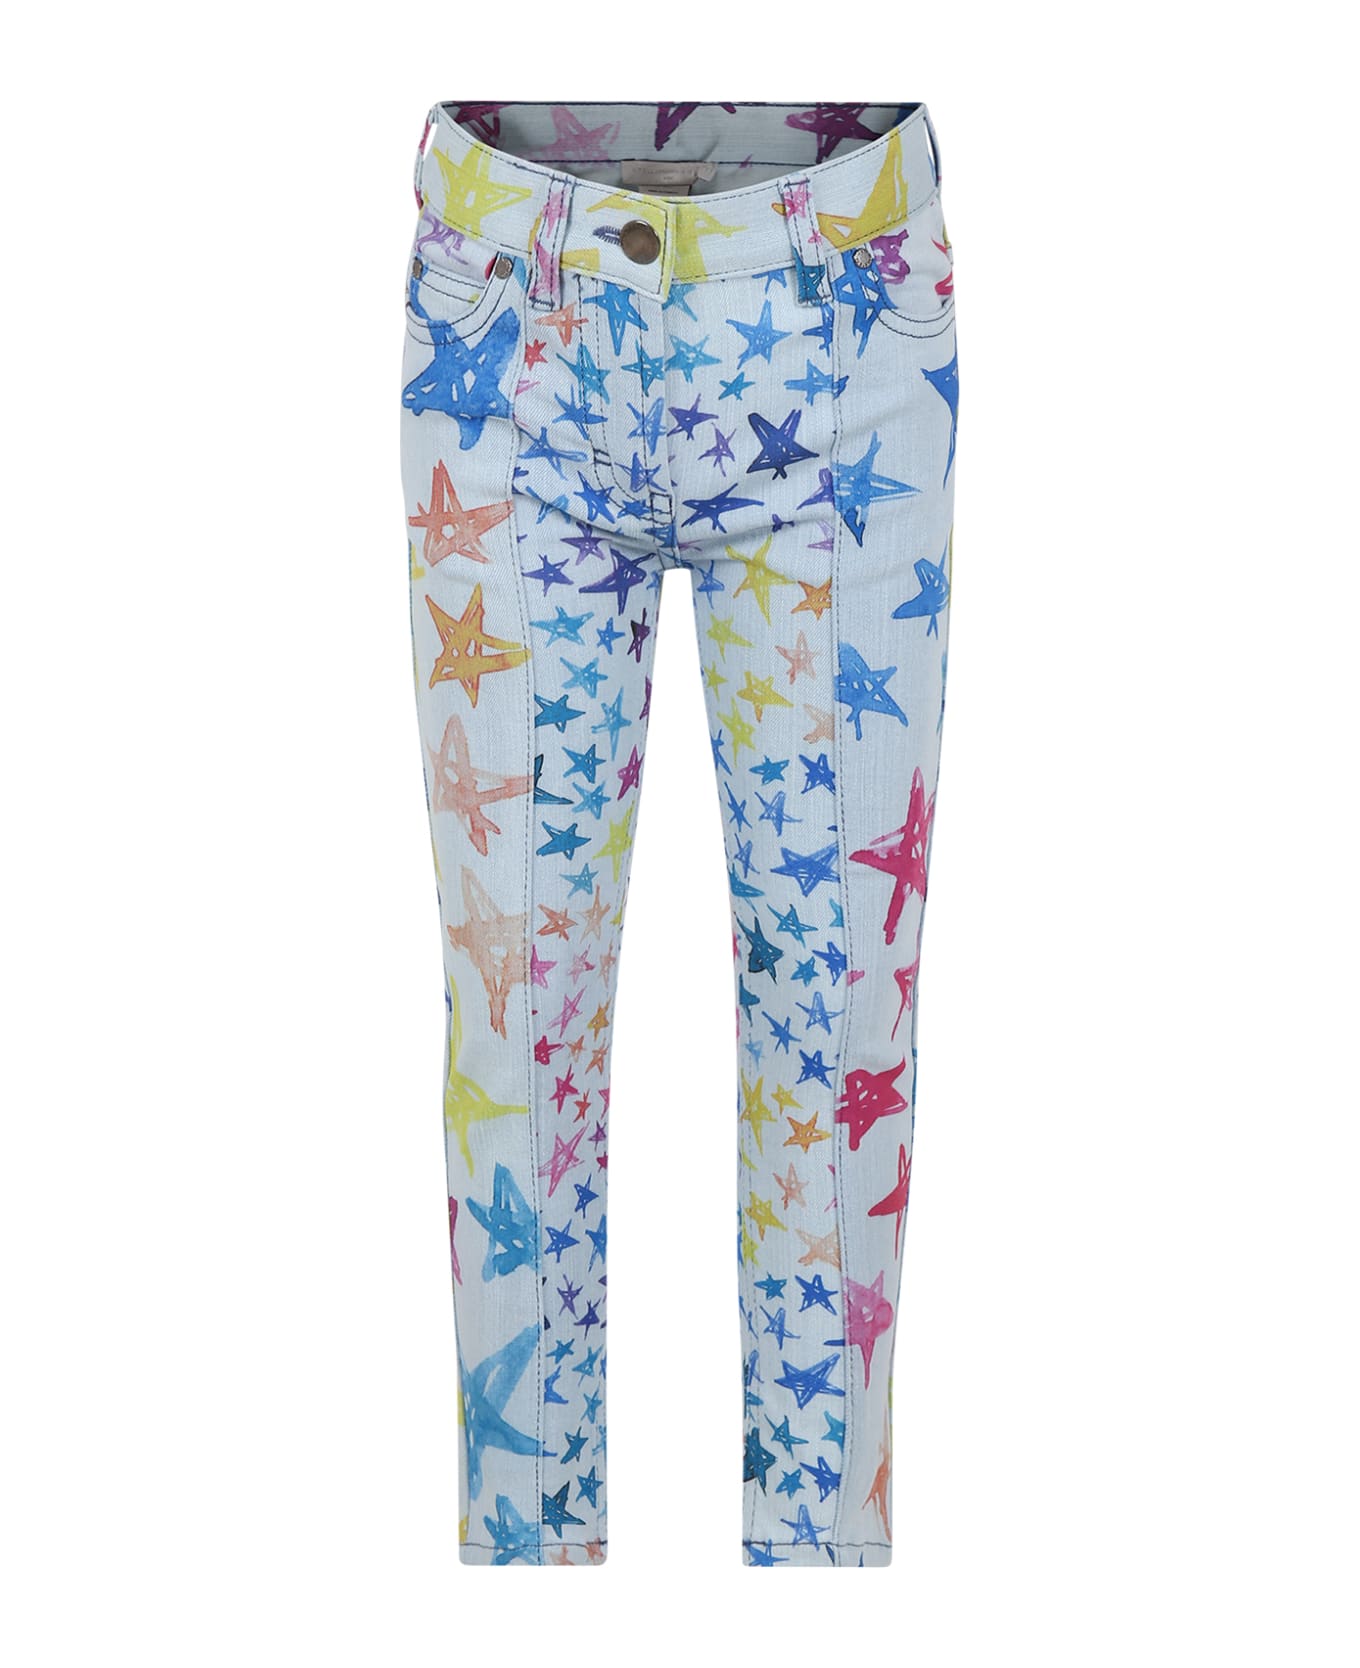 Stella McCartney Kids Light Blue Jeans For Girl With Stars Print - Denim ボトムス